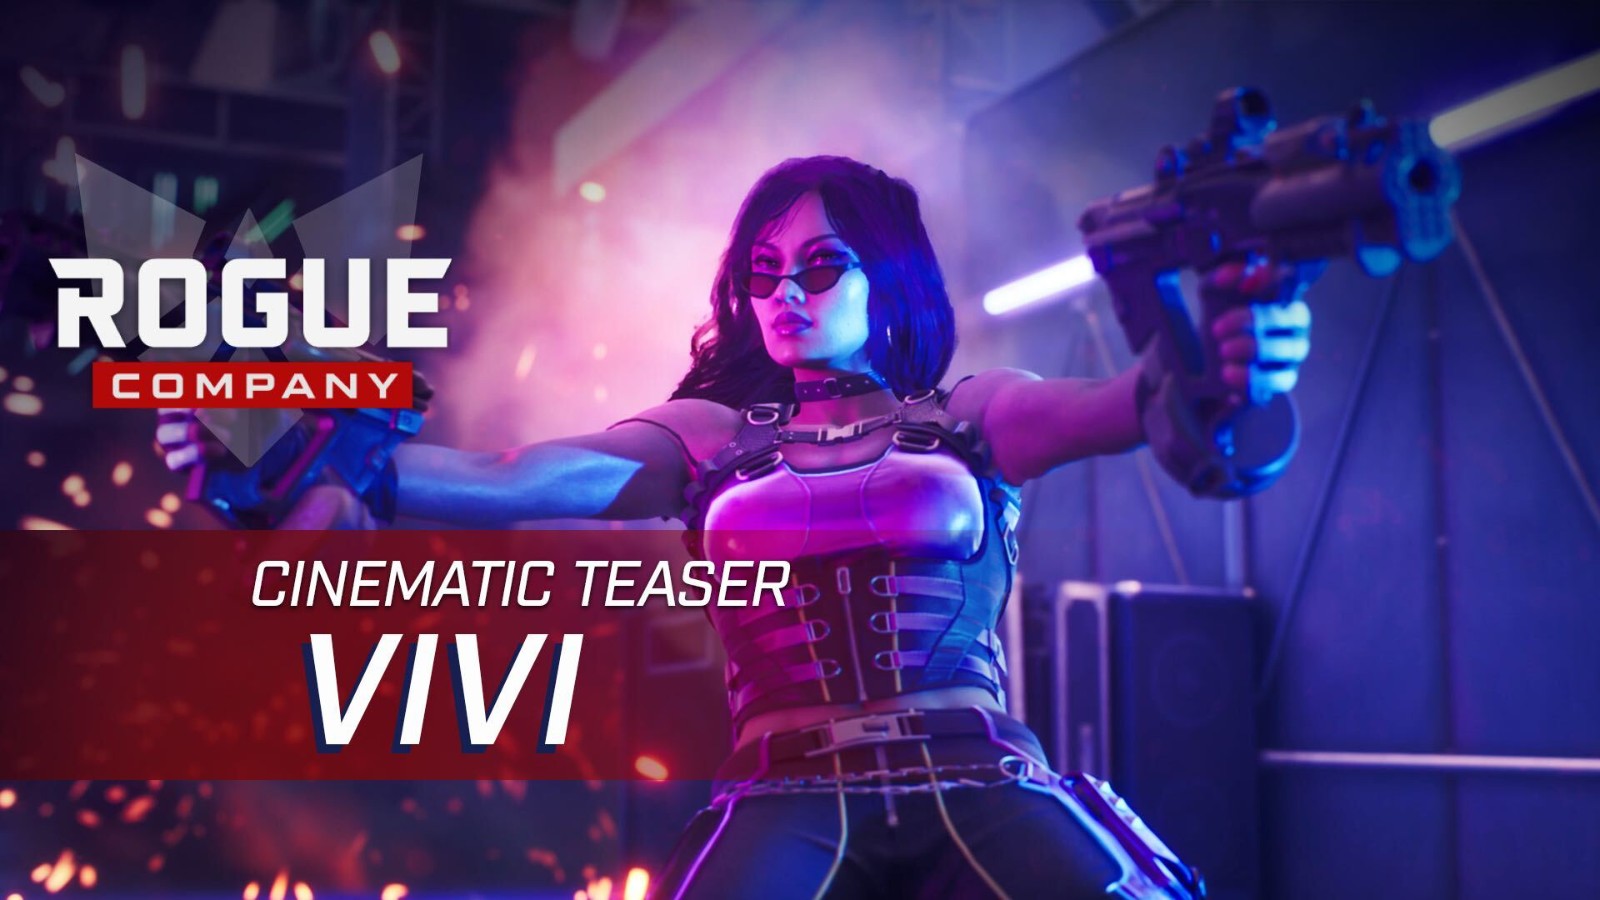 7月18日《俠盜公司》開放新角色搖滾女星ViVi